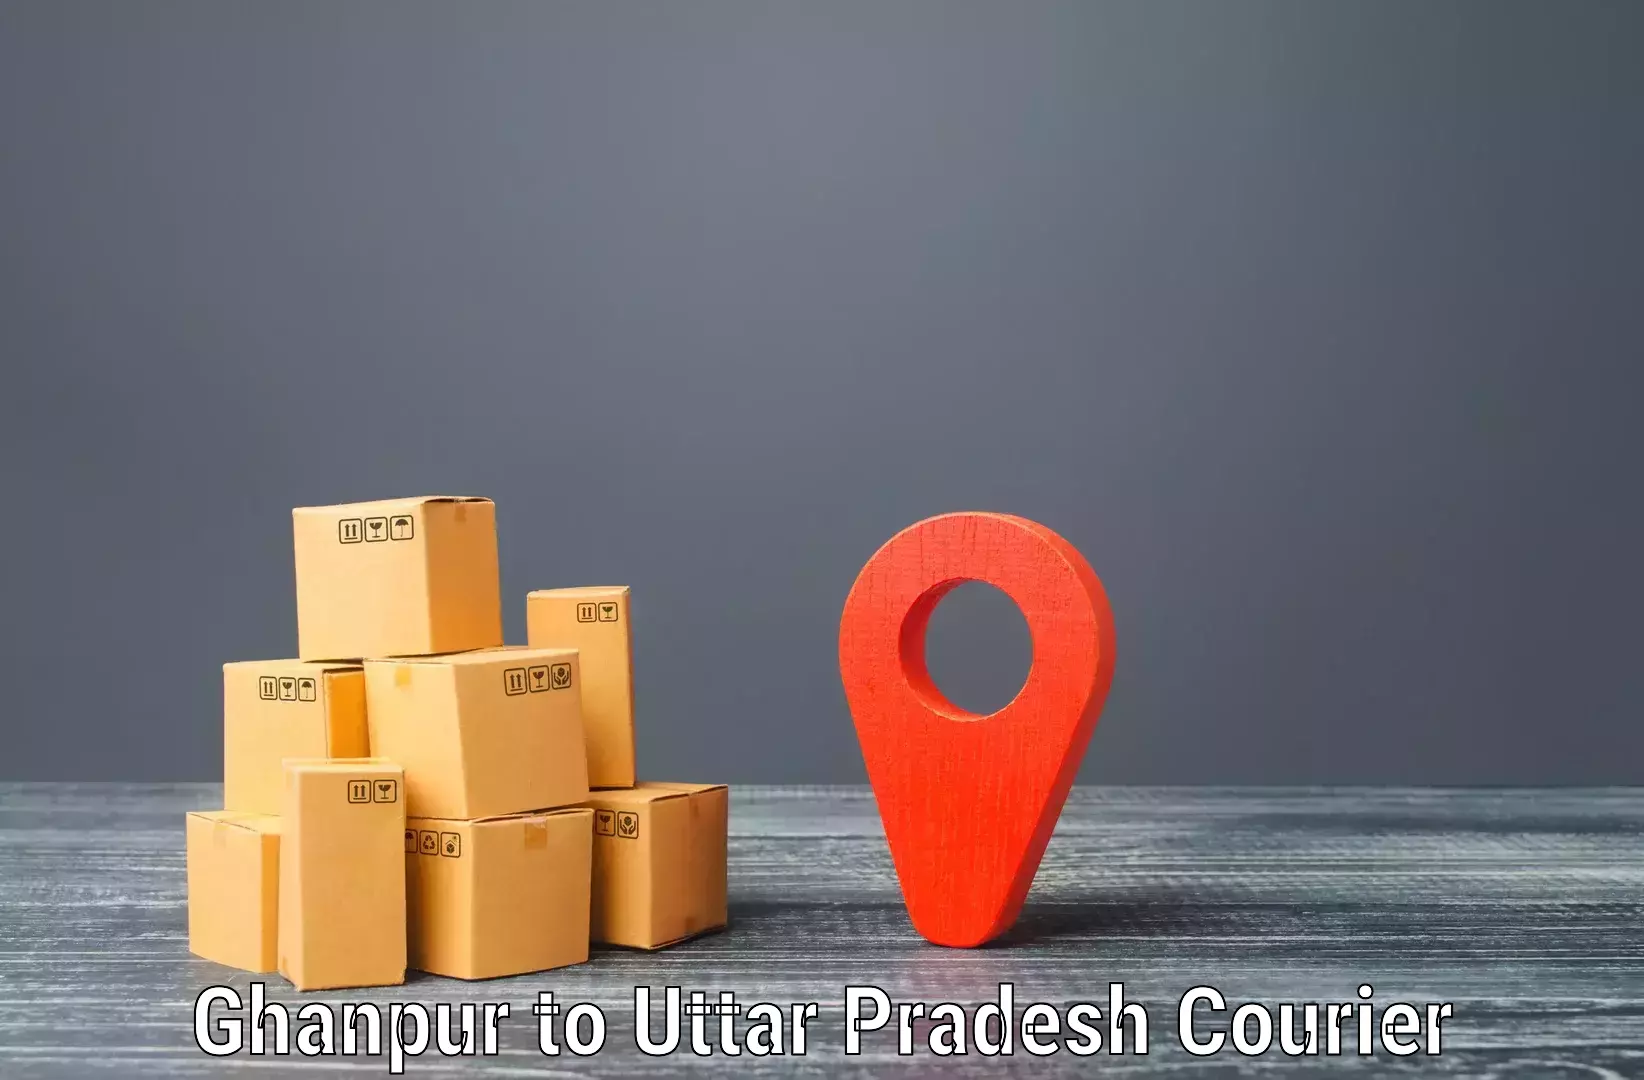 High-priority parcel service Ghanpur to Sant Kabir Nagar